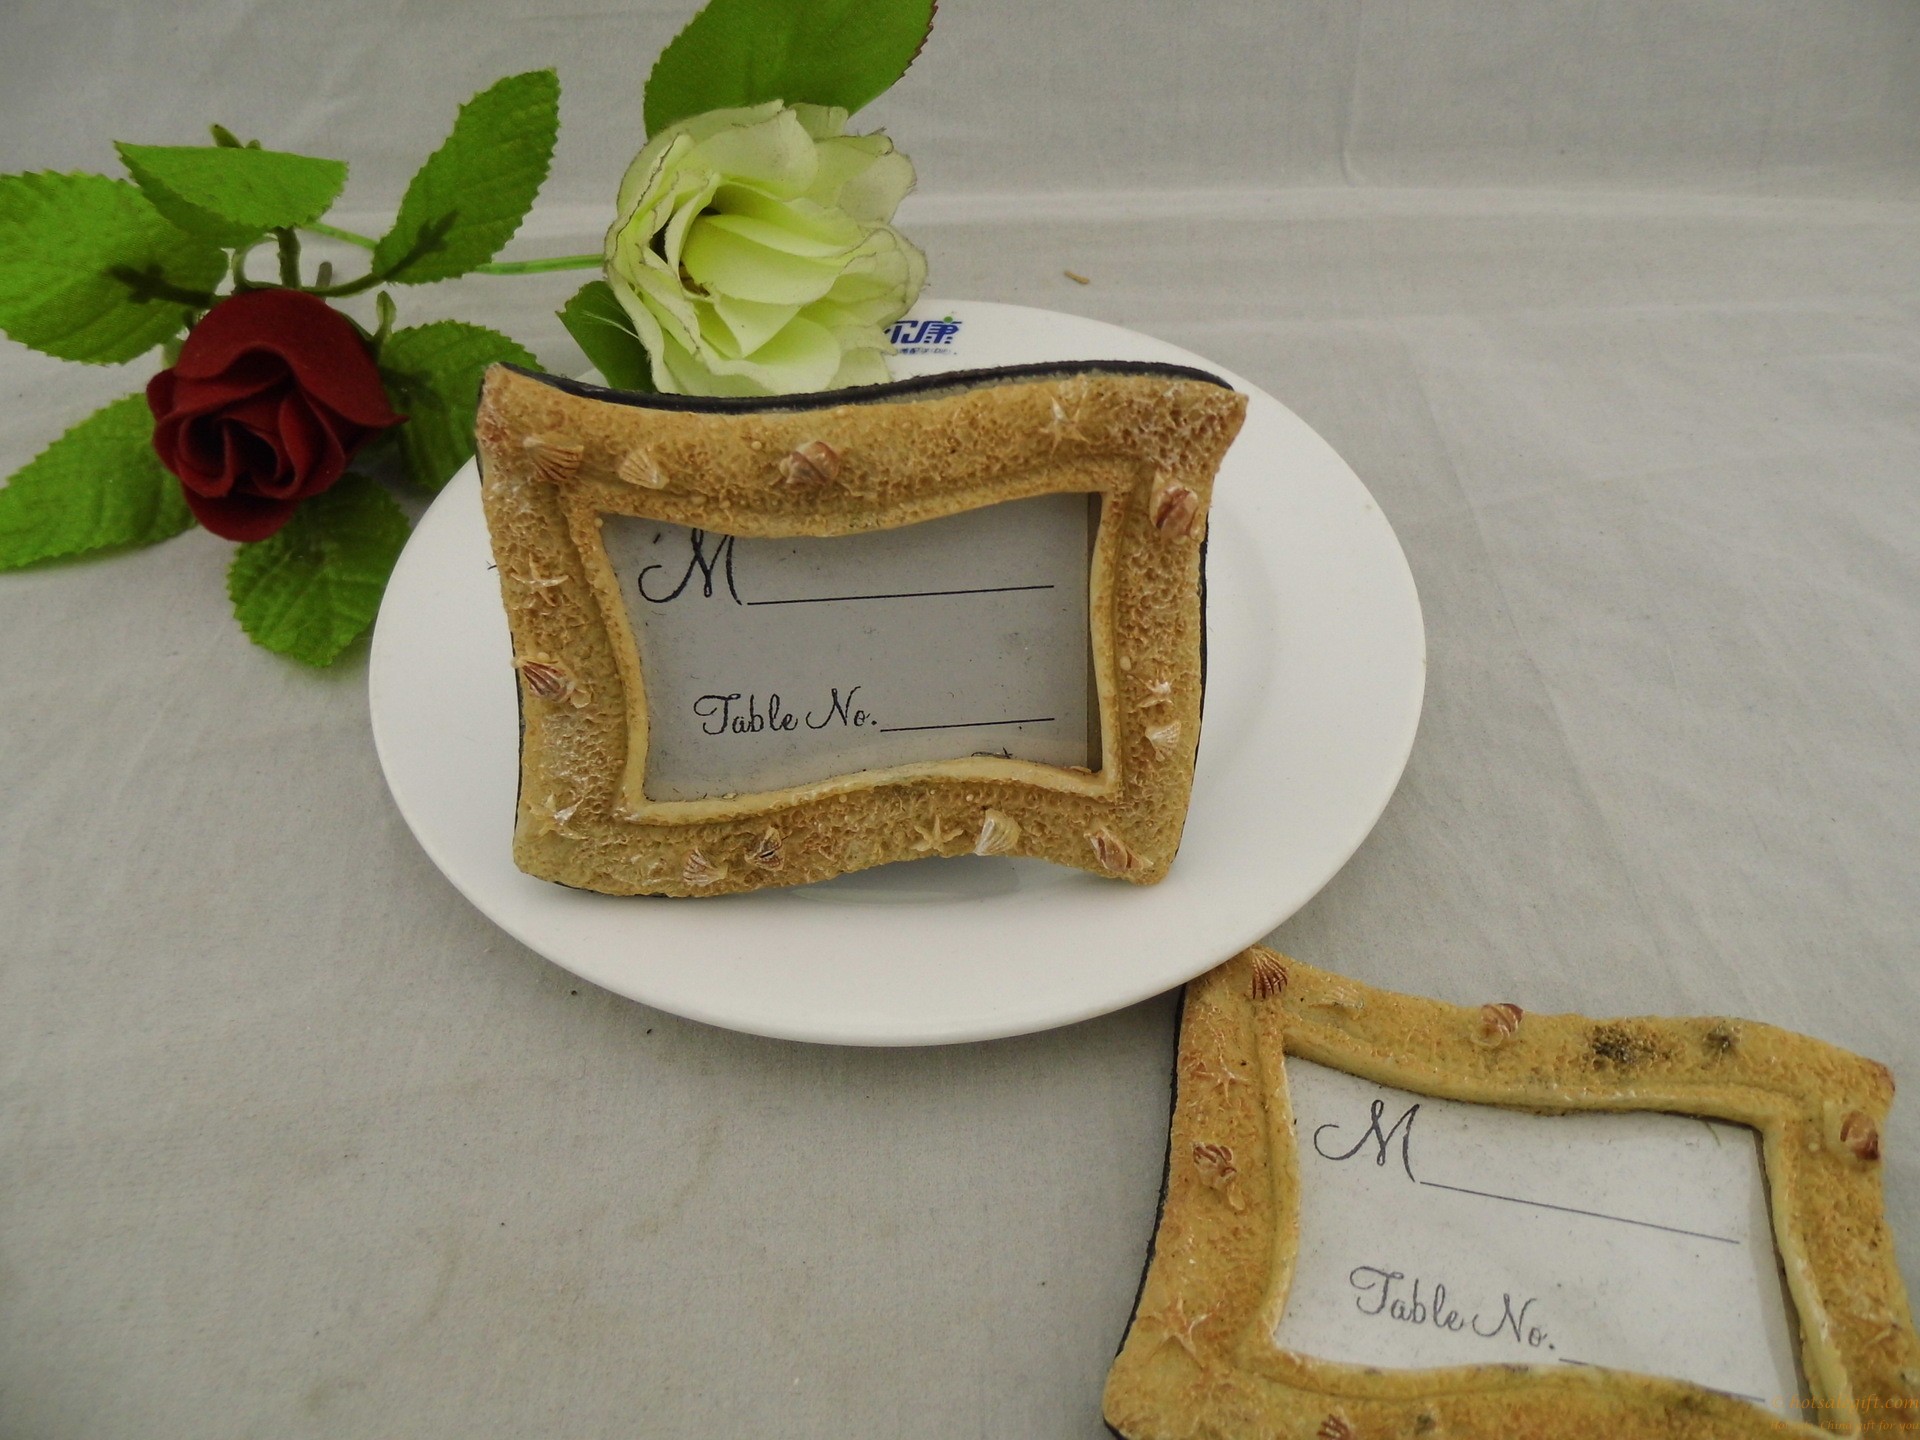 hotsalegift beachthemed photo frame resin place card holder favor wedding 4